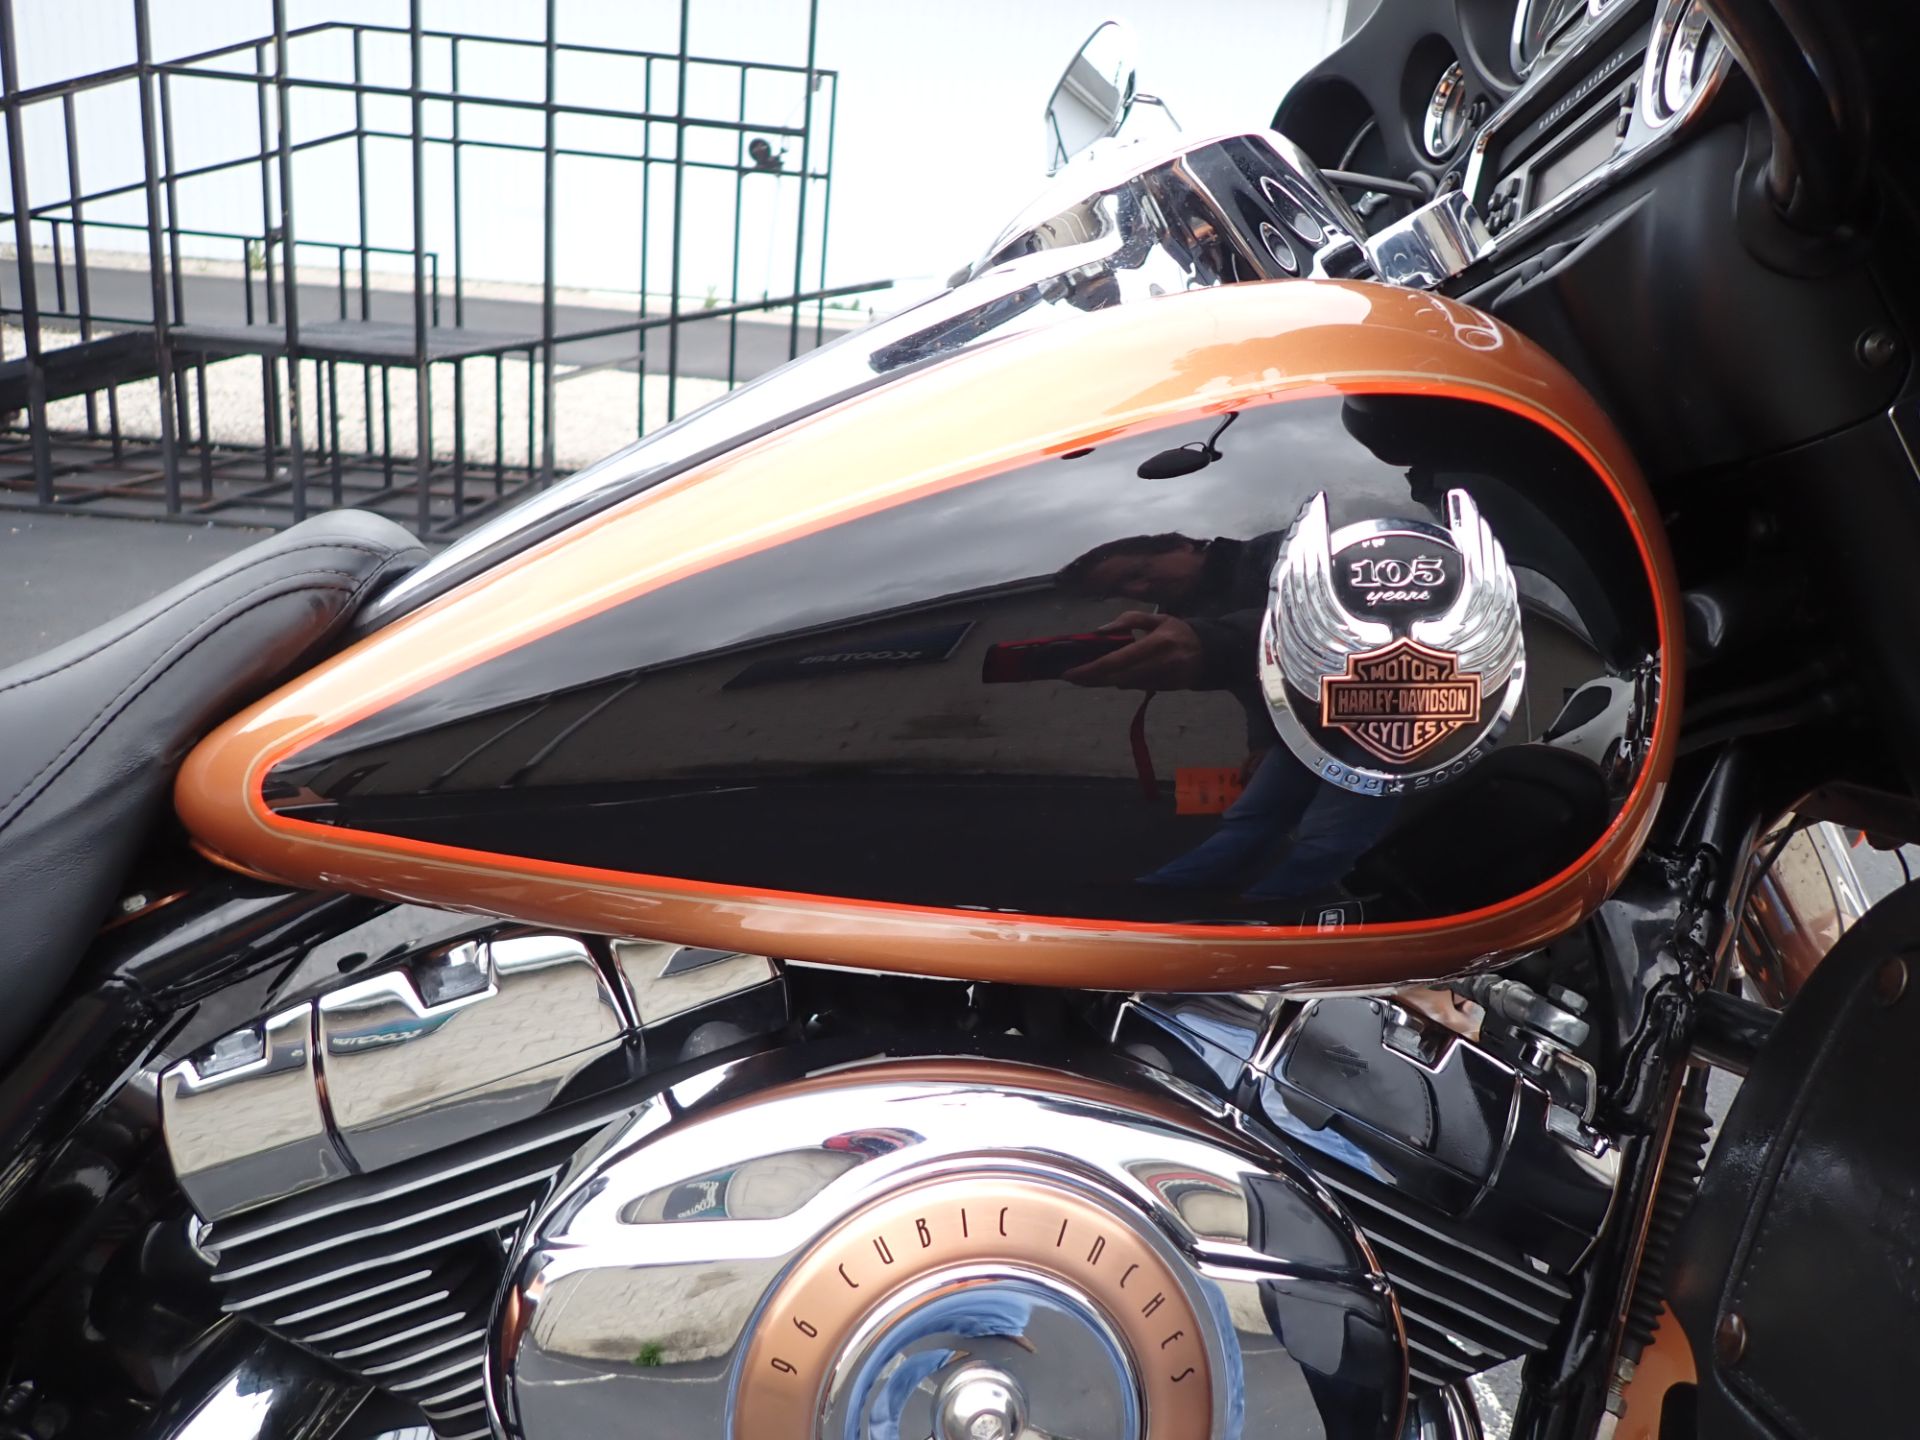 2008 Harley-Davidson Ultra Classic® Electra Glide® in Massillon, Ohio - Photo 3